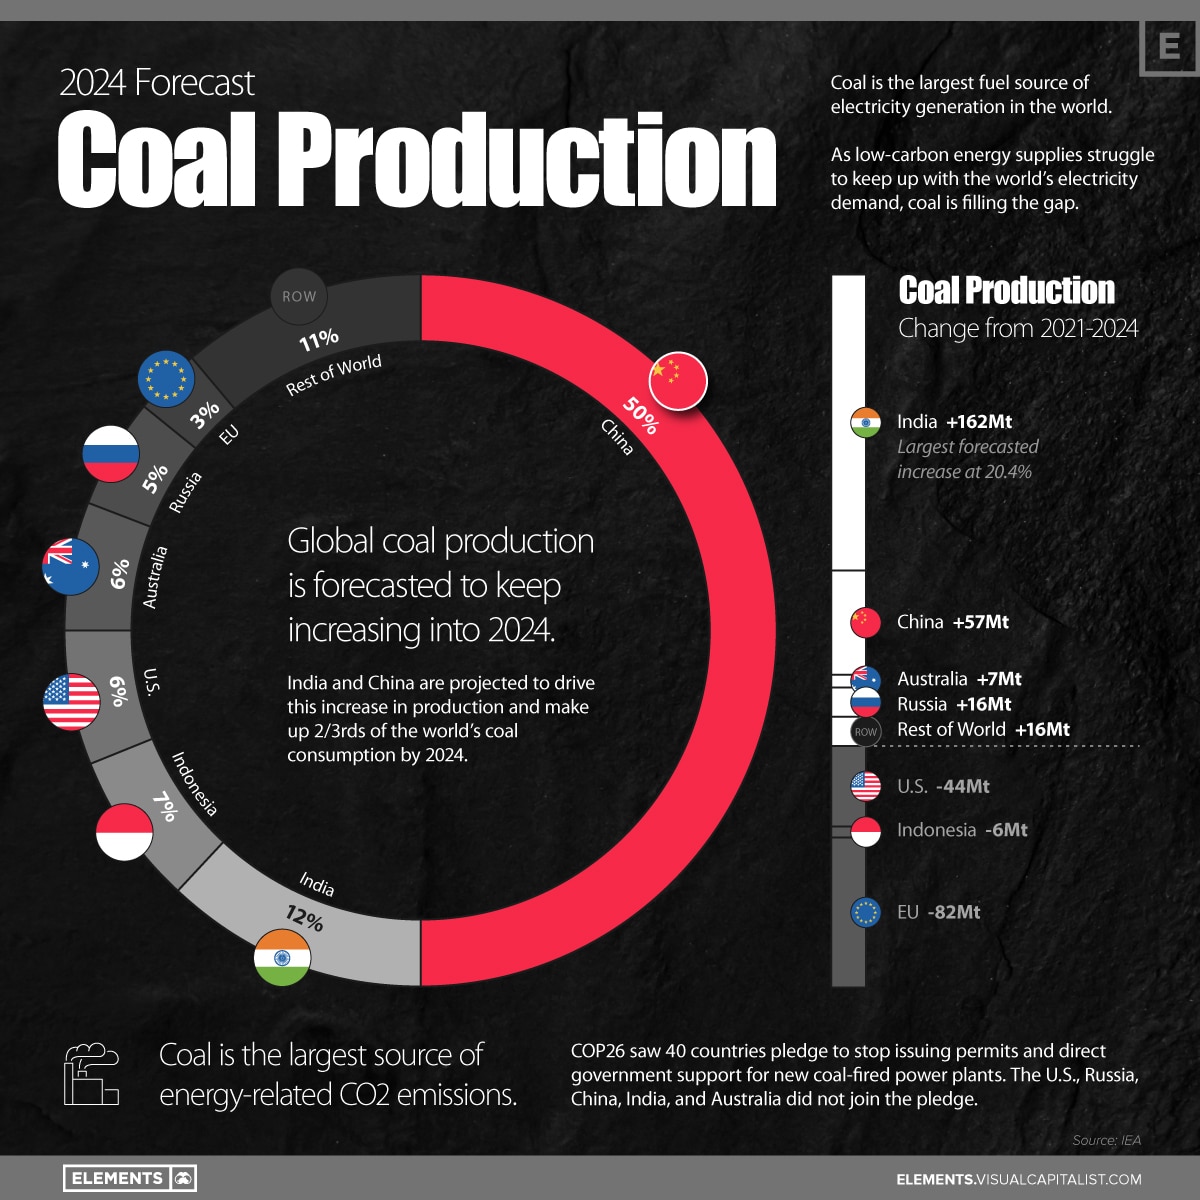 So entwickelt sich die Kohleförderung bis 2024